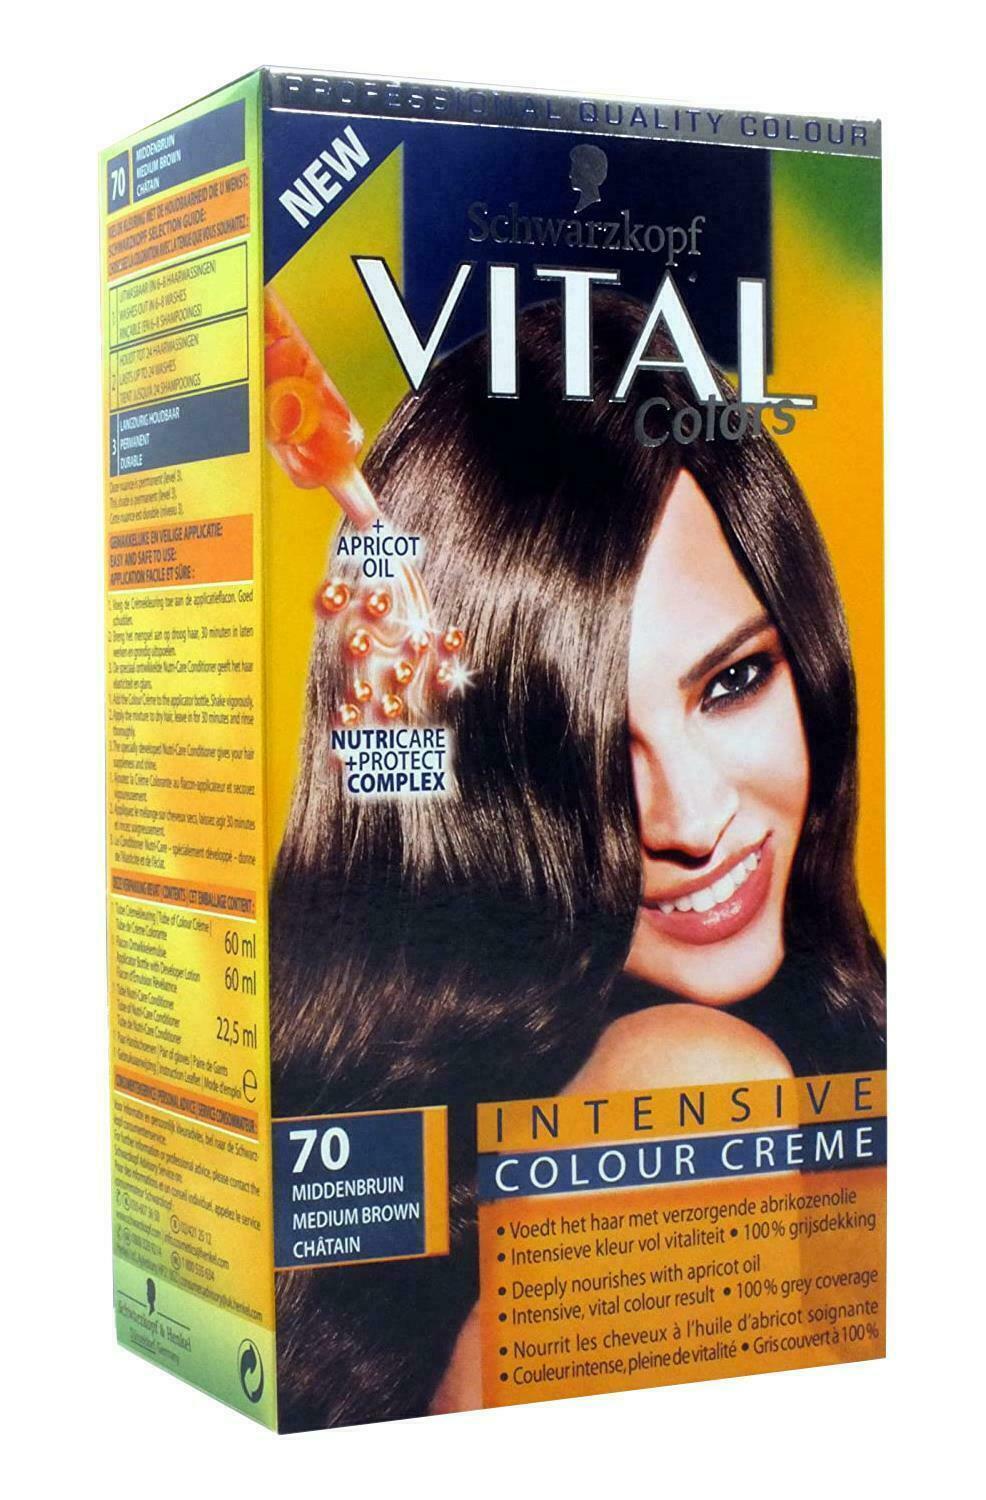 3 X Schwarzkopf Vital Colours Medium Brown 70 Hair Dye 3 pack